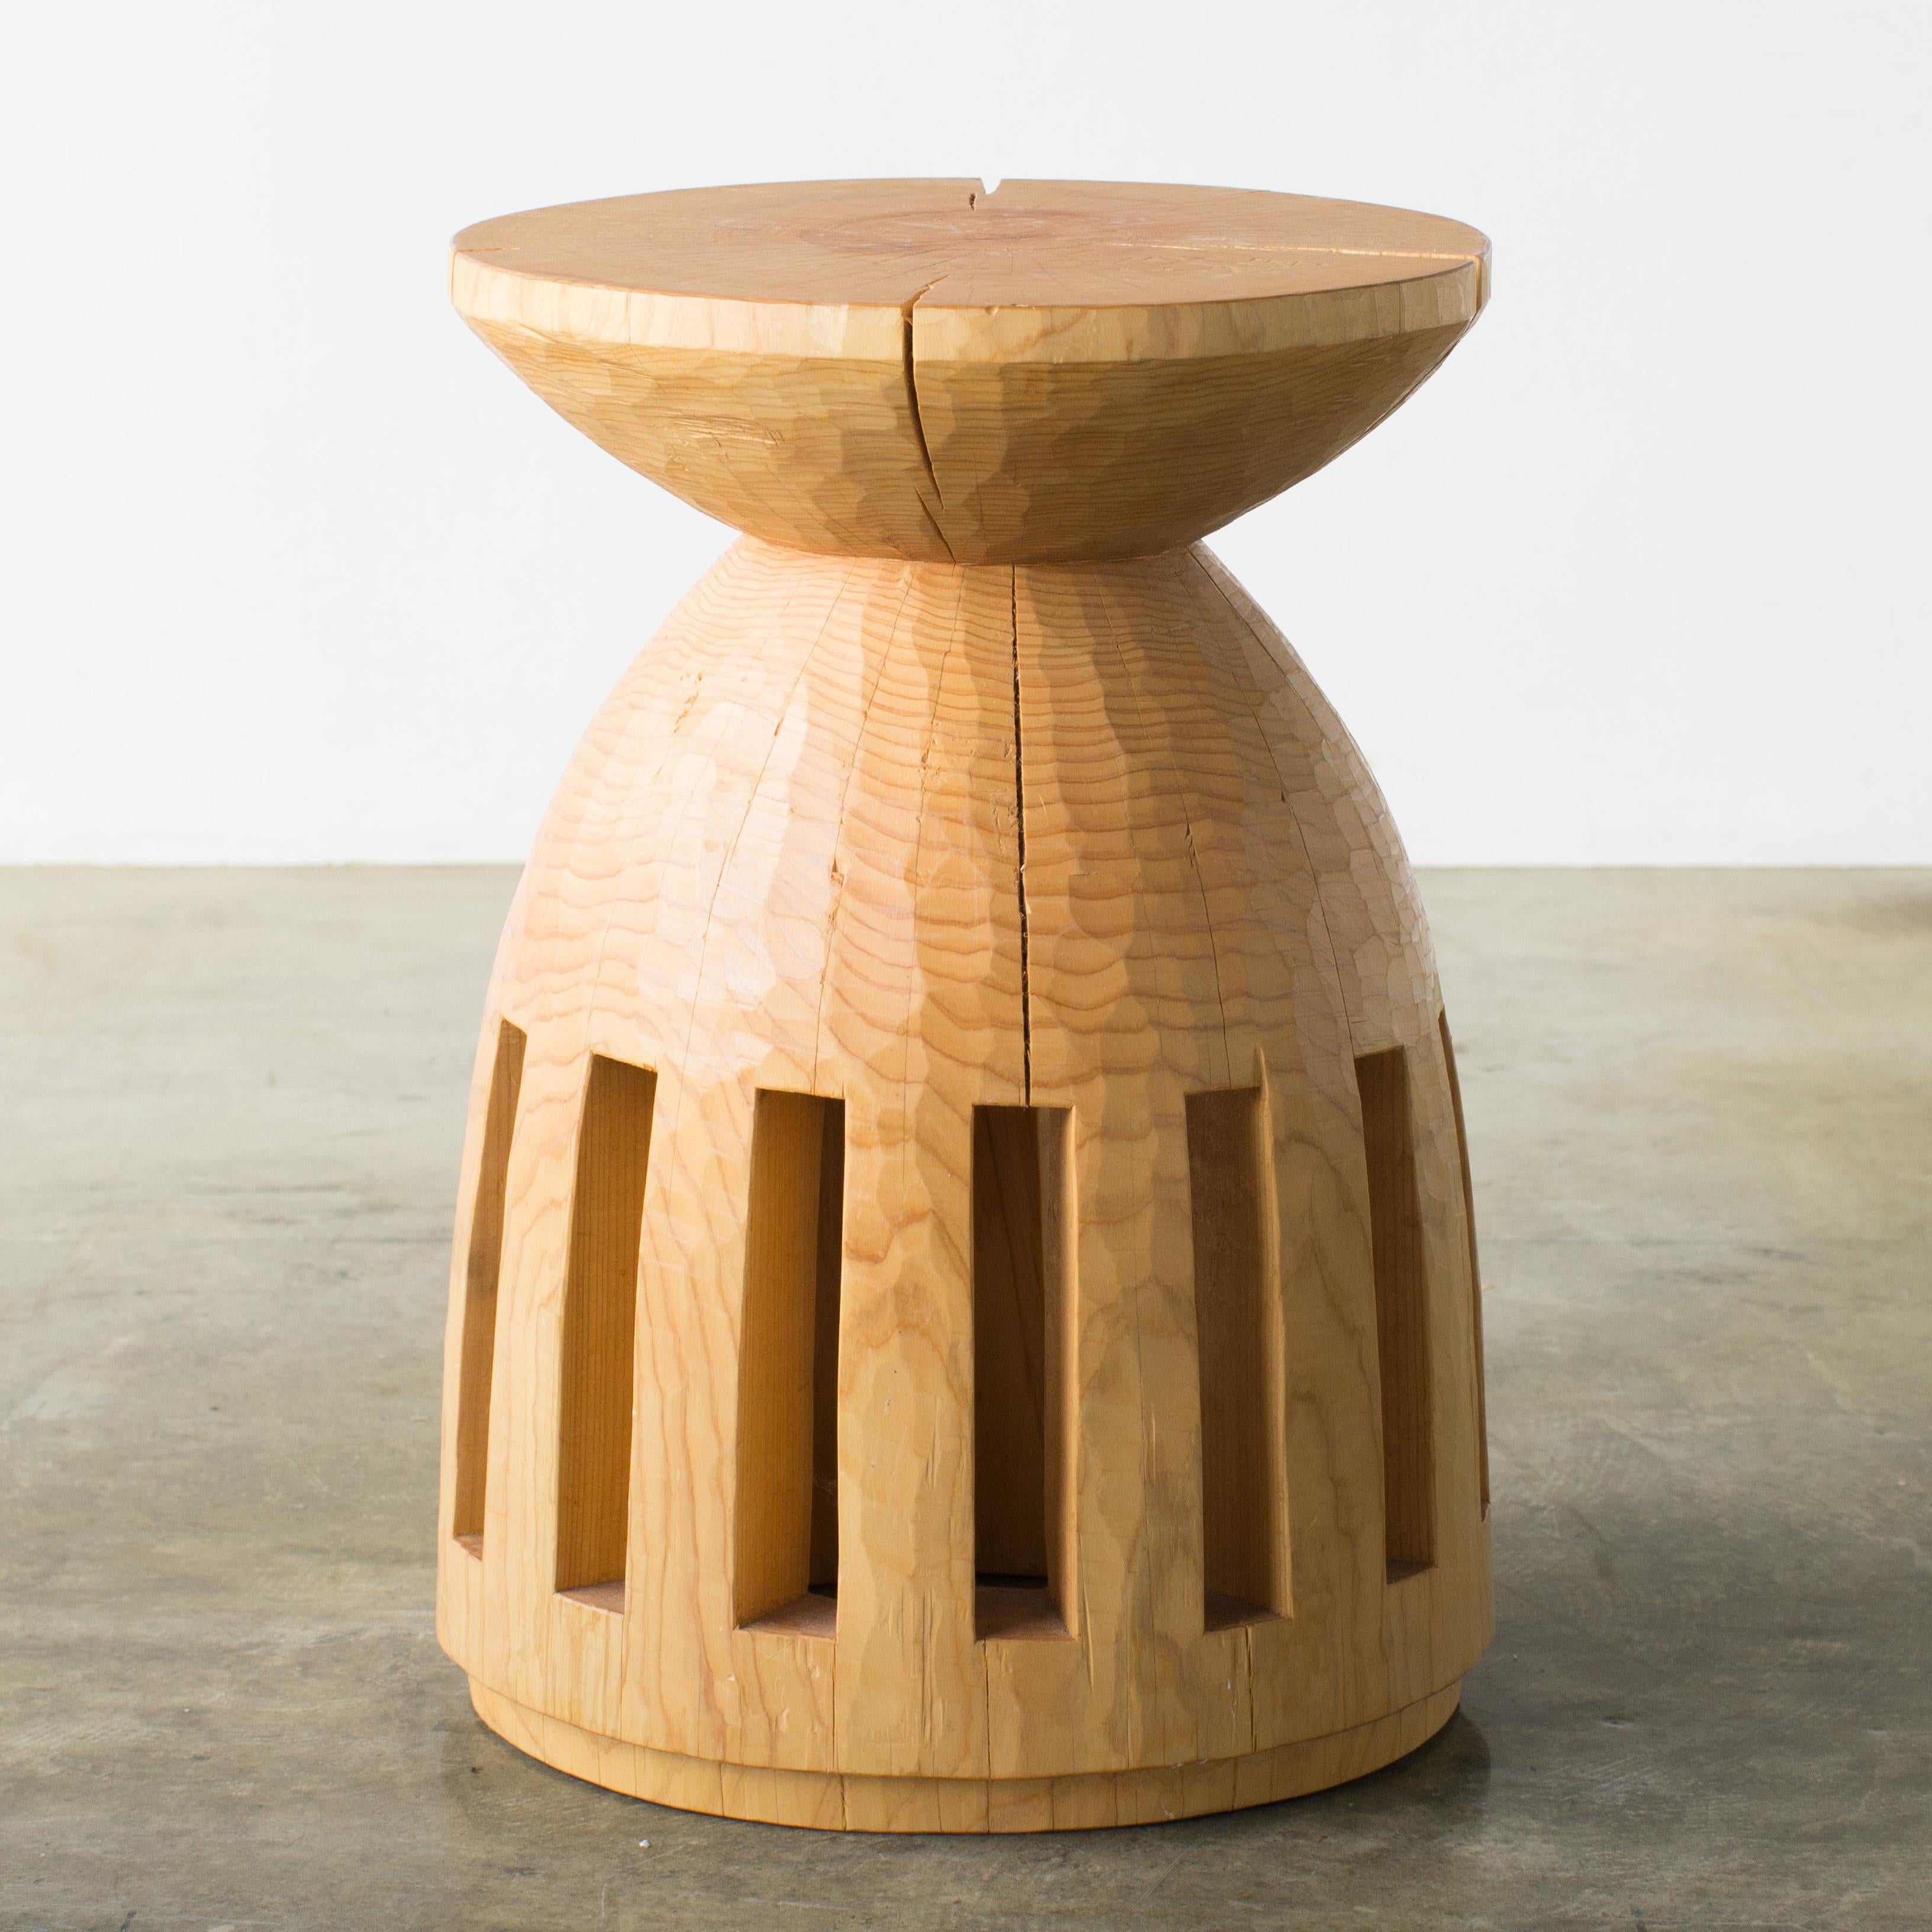 Nom : Un jour pour aller à l'océan
Tabouret sculptural de Hiroyuki Nishimura et meubles sculptés en zone
Matériau : Cyprès
Cette œuvre est taillée dans le bois avec des sortes de tronçonneuses.
La plupart des bois utilisés pour les œuvres de